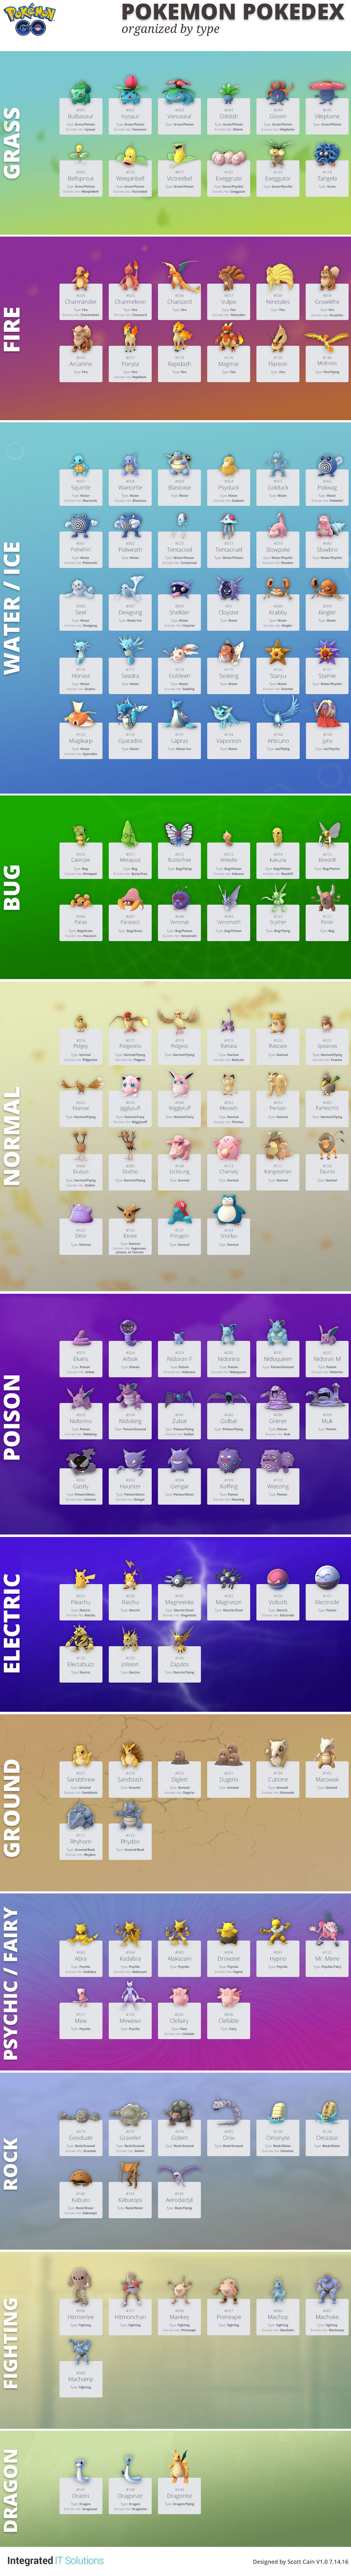 Pokemon GO Pokedex List Sorted by Type [Infographic]